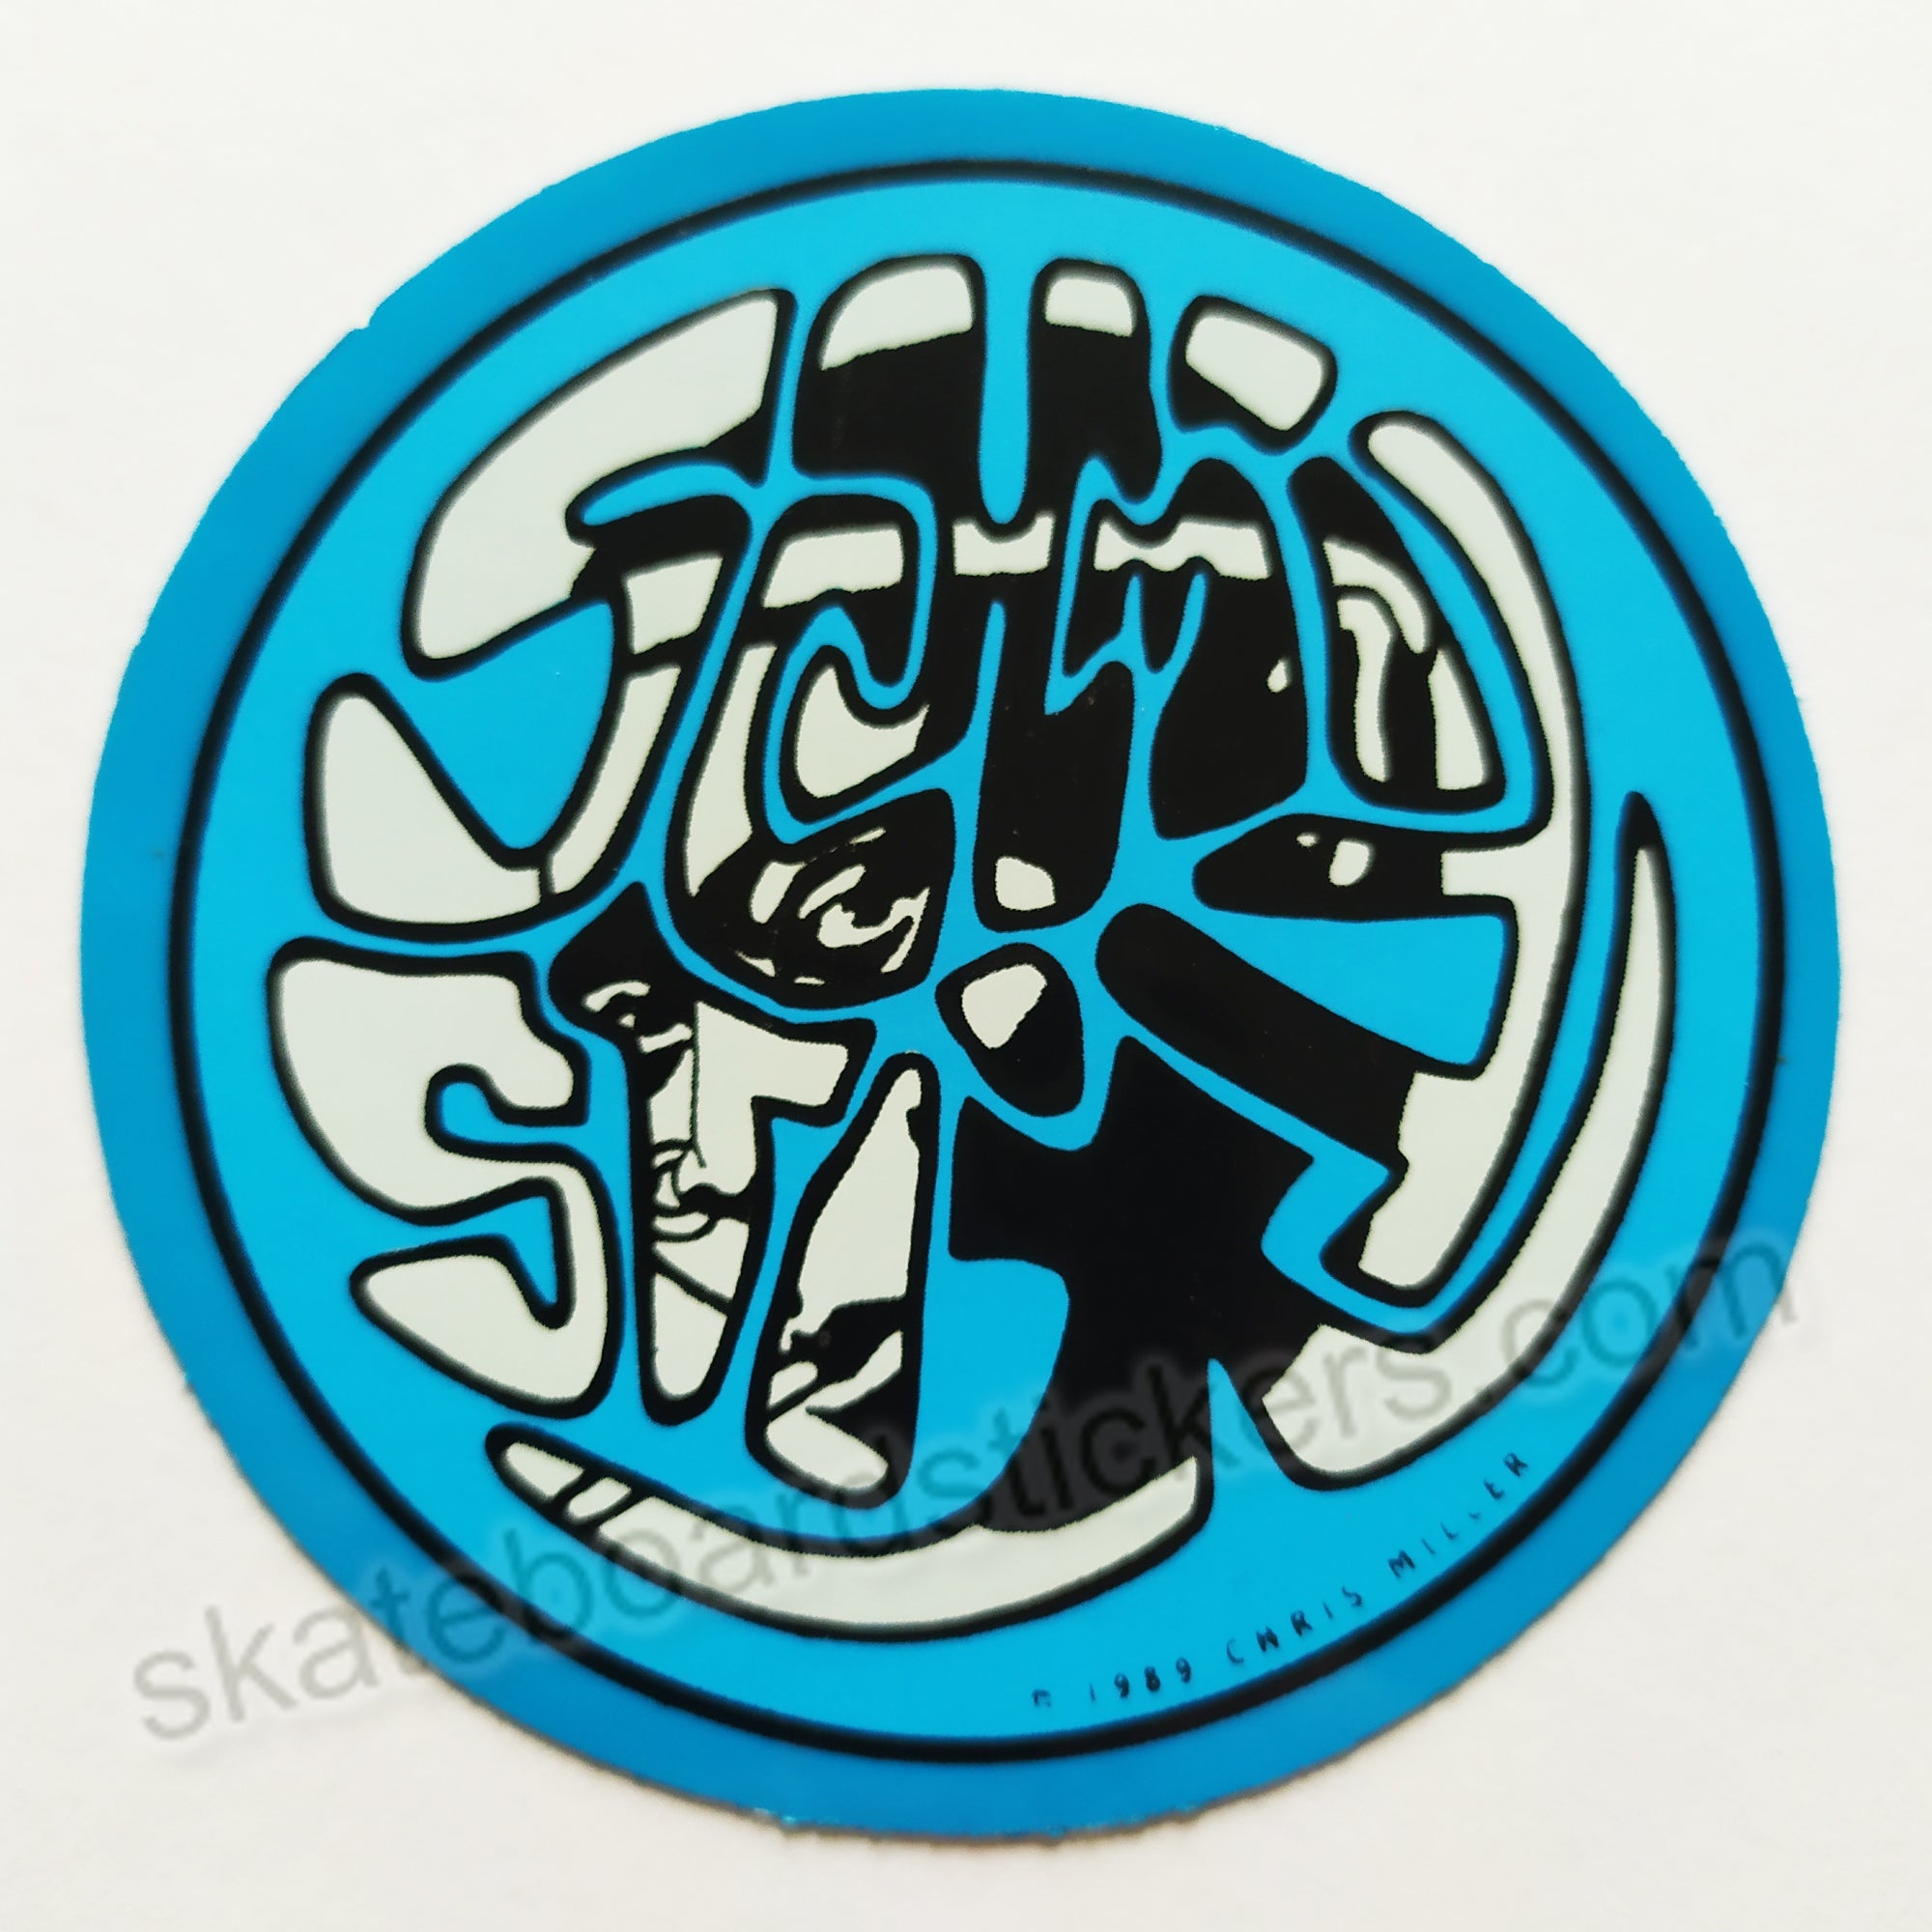 Schmitt Stix - Silly Stix Skateboard Sticker - blue - SkateboardStickers.com